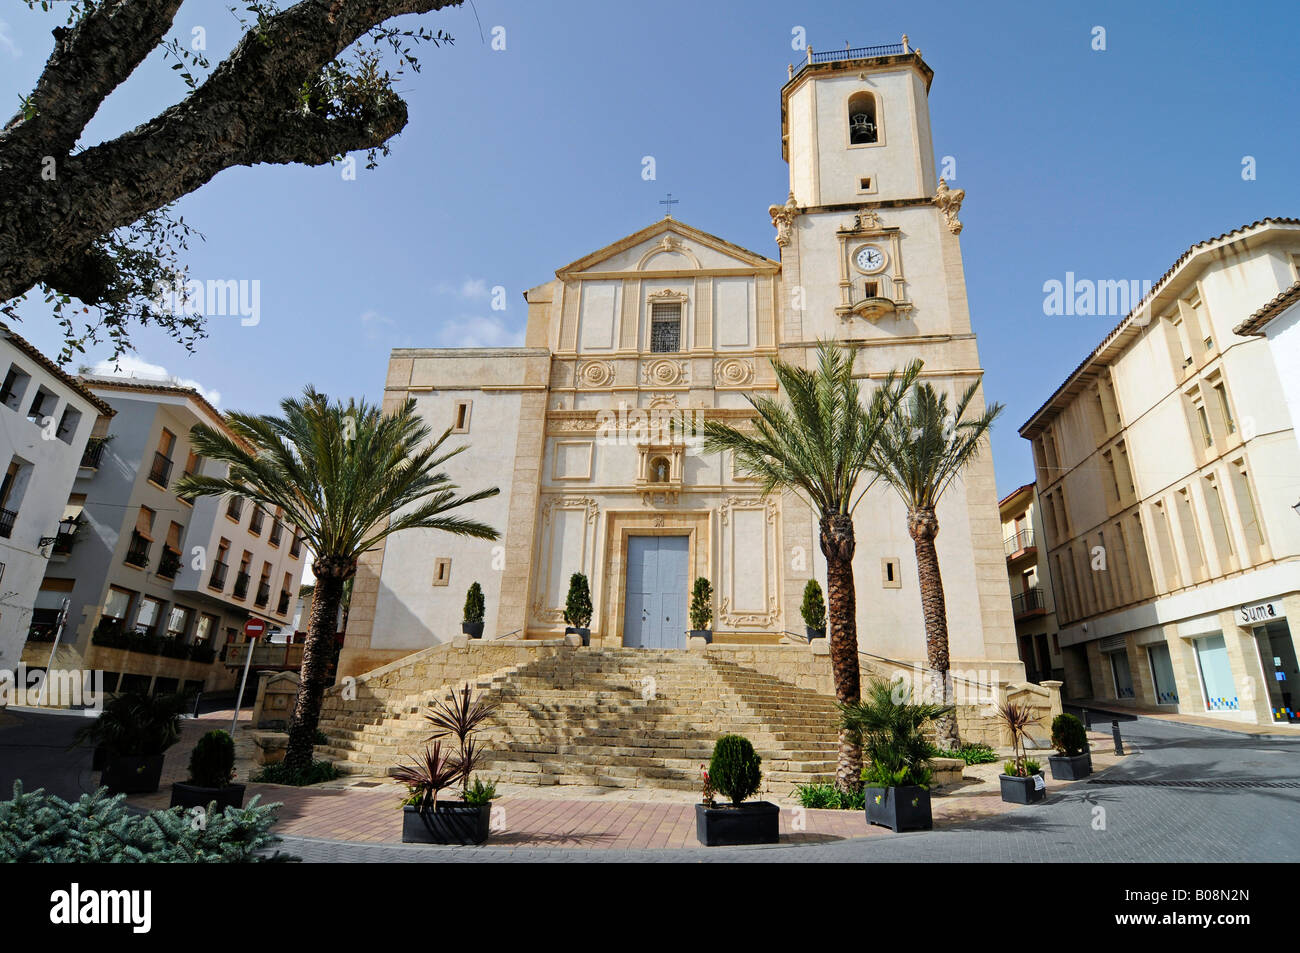 Palm treas in front of the La Purisima Concepcion Church of La Nucia, Alicante, Costa Blanca, Spain Stock Photo